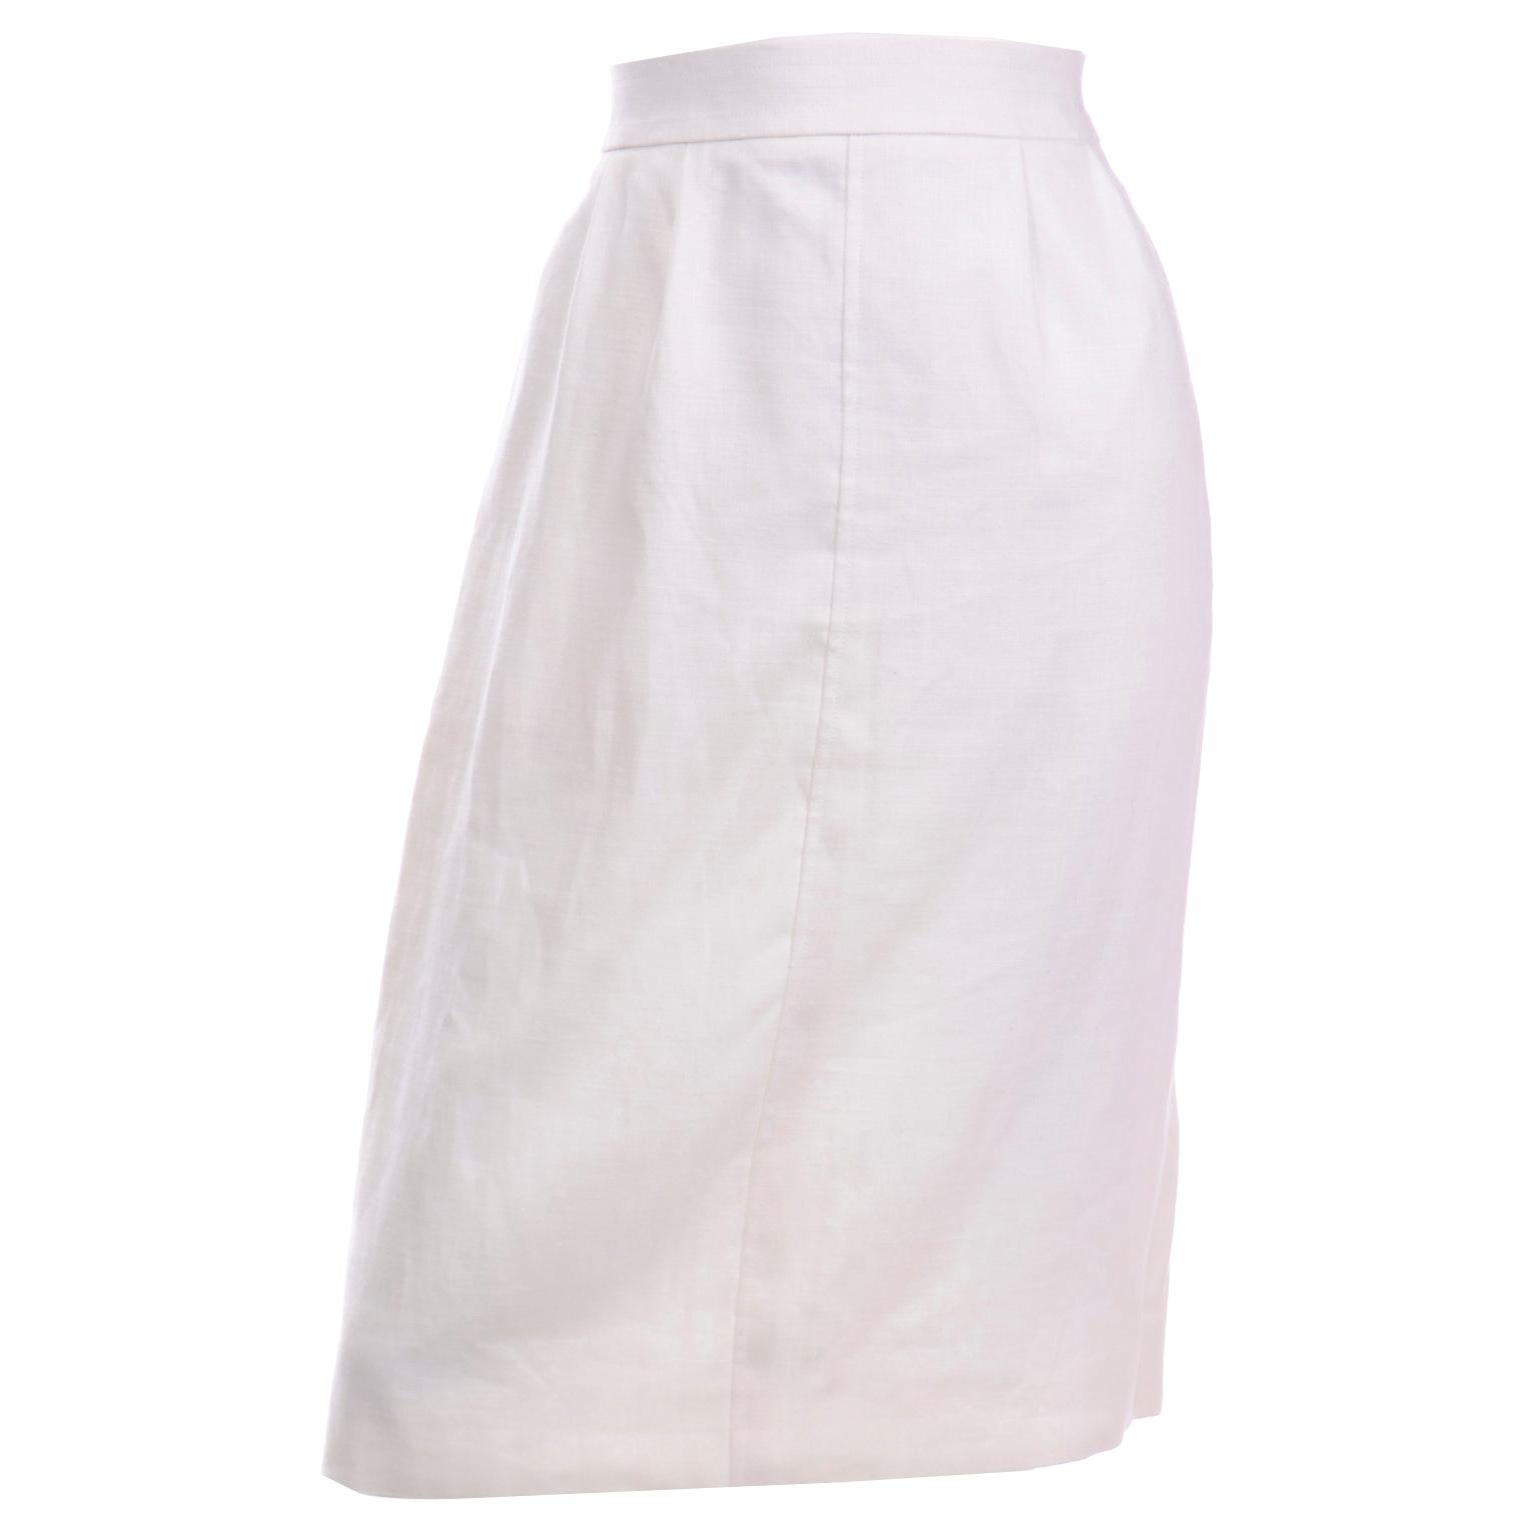 Yves Saint Laurent Vintage White Linen Pencil Skirt